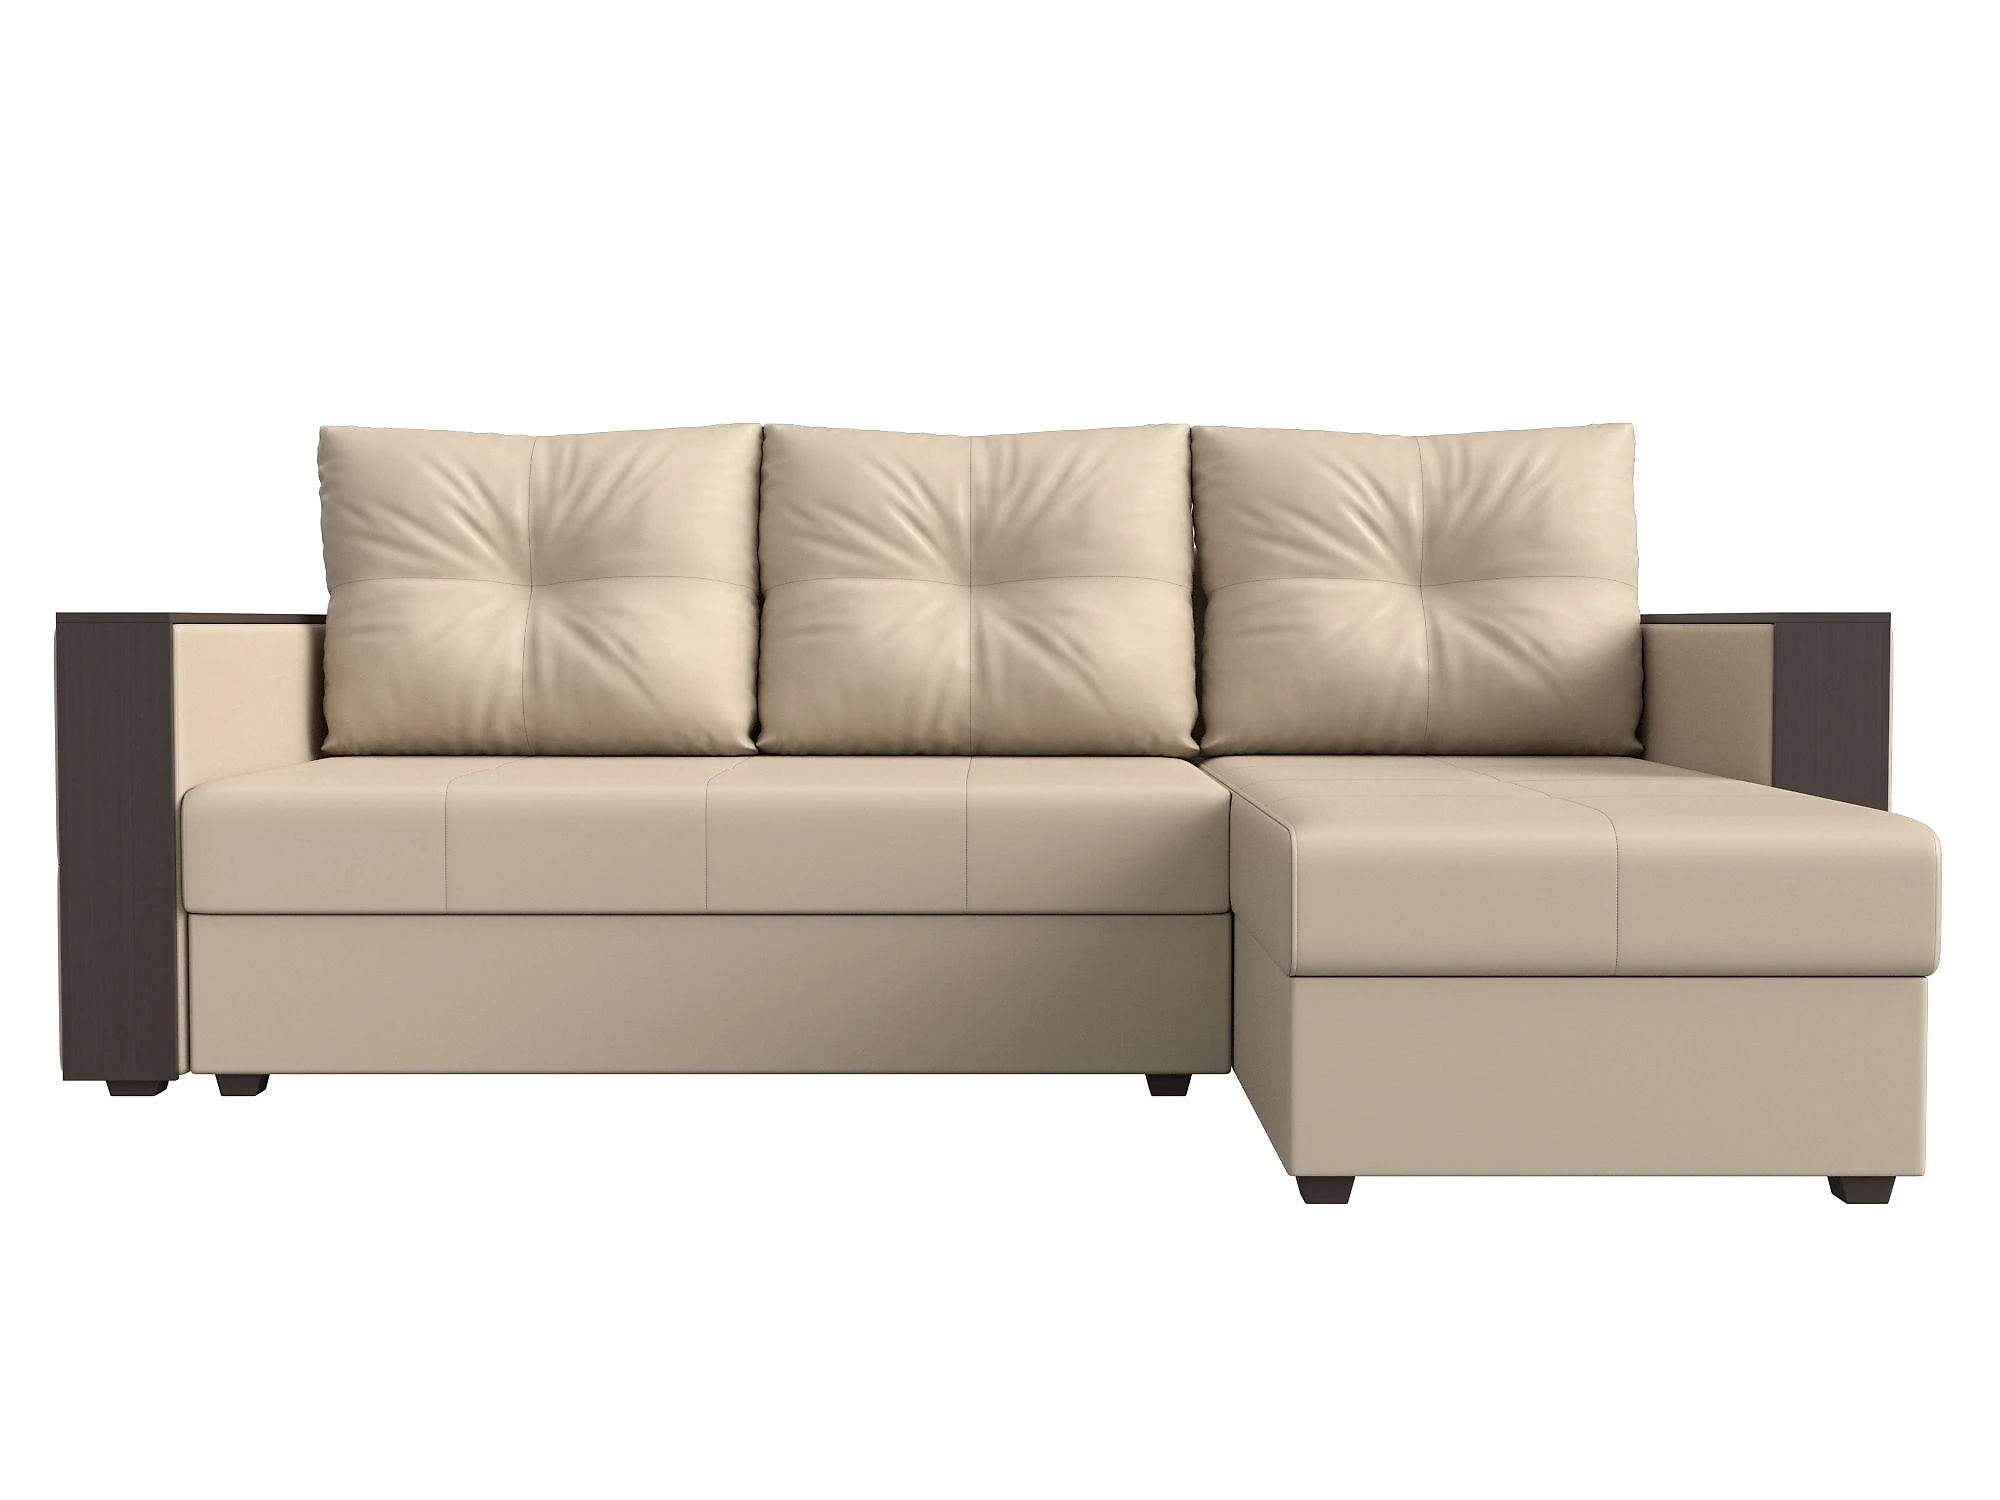 Односпальный угловой диван Валенсия Лайт Дизайн 12